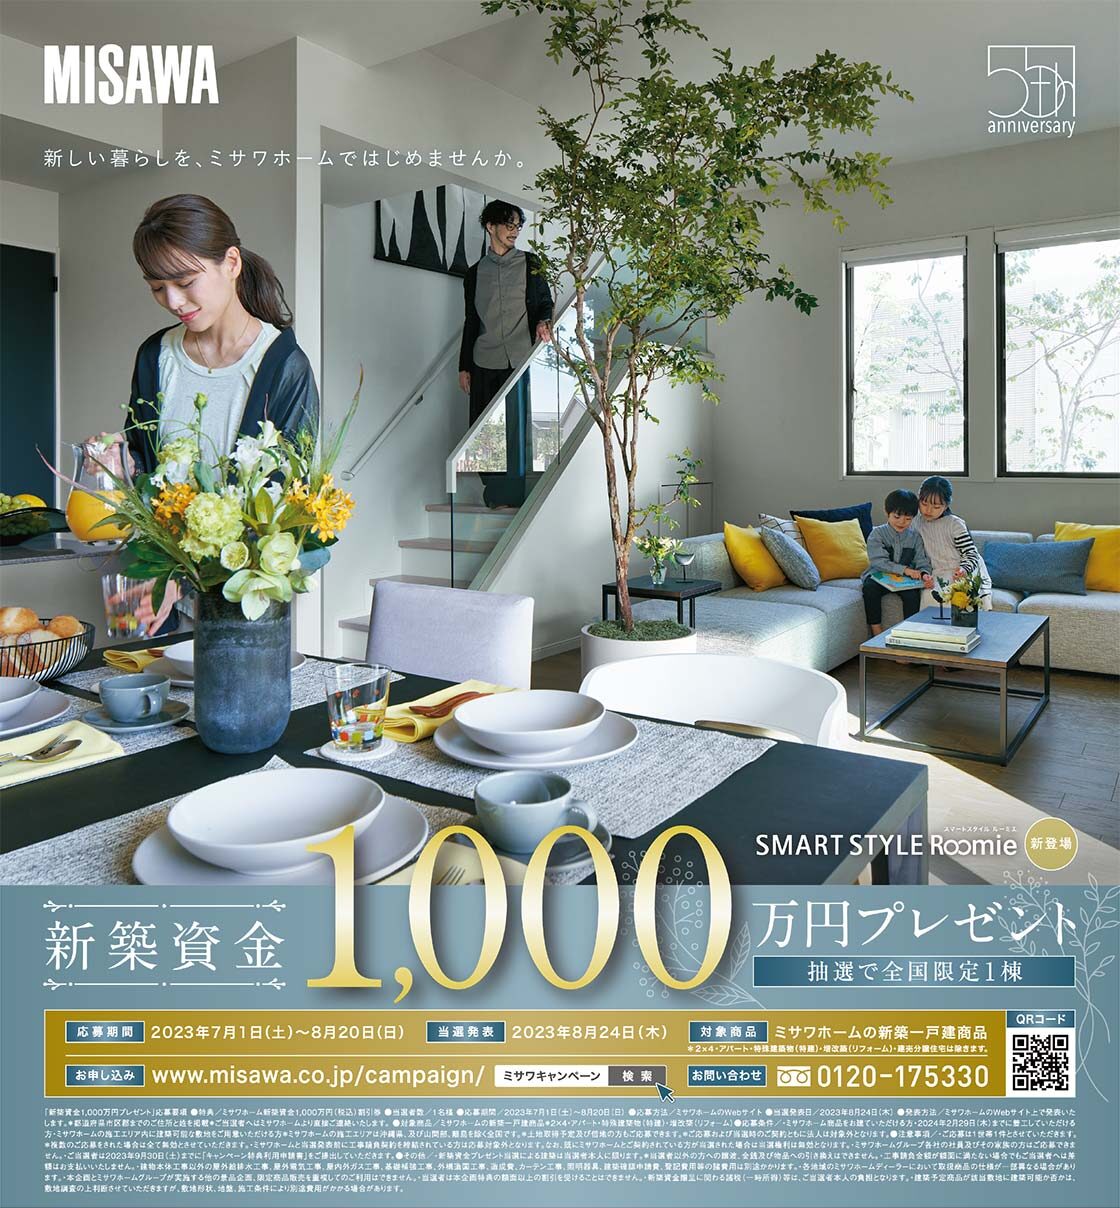 ミサワホームの新築資金1,000万円プレゼントキャンペーン